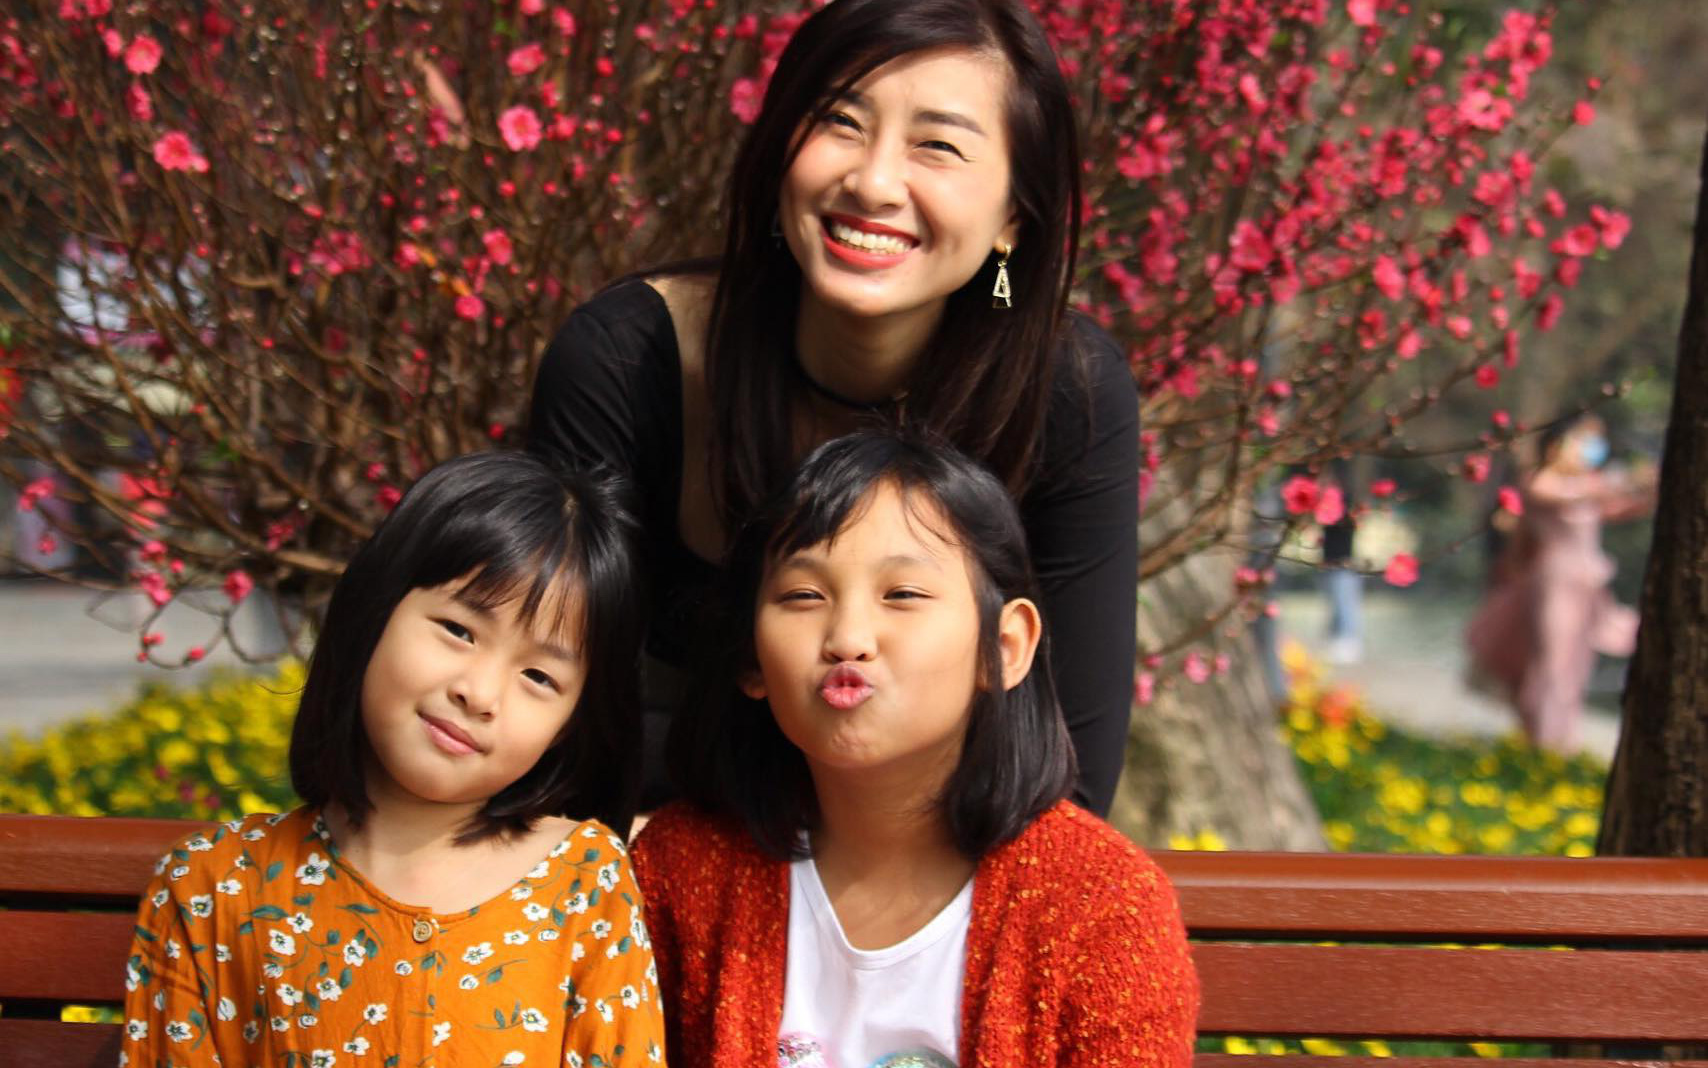 Phụ huynh ở Hà Nội kể chuyện làm “mẹ lười có mưu kế” và mánh dạy con học không bị… tăng xông, hội cha mẹ thả tim nhiệt liệt